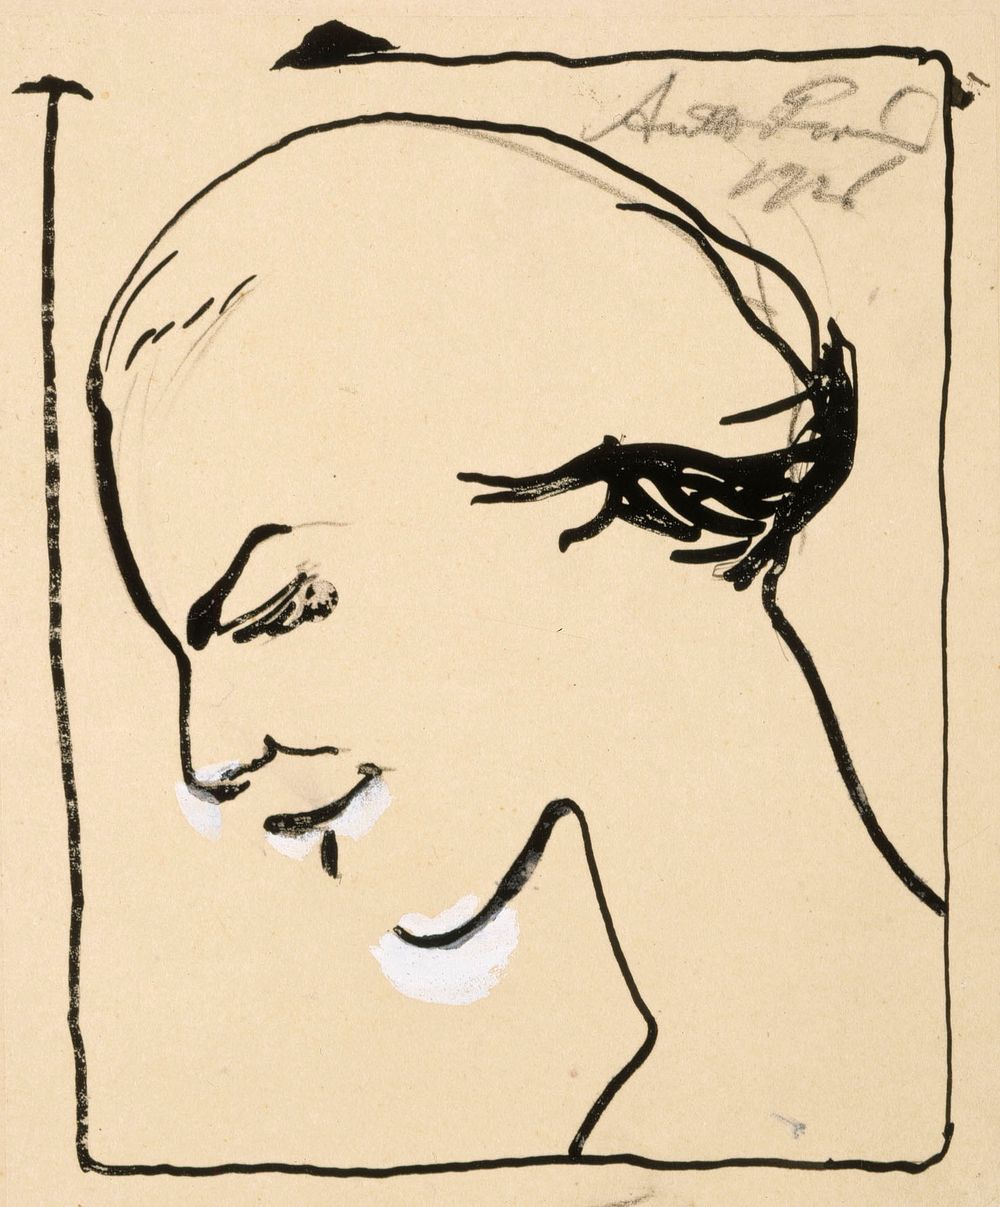 Ingénue = luonnollinen, teeskentelemätön, naiivi, viaton, 1926